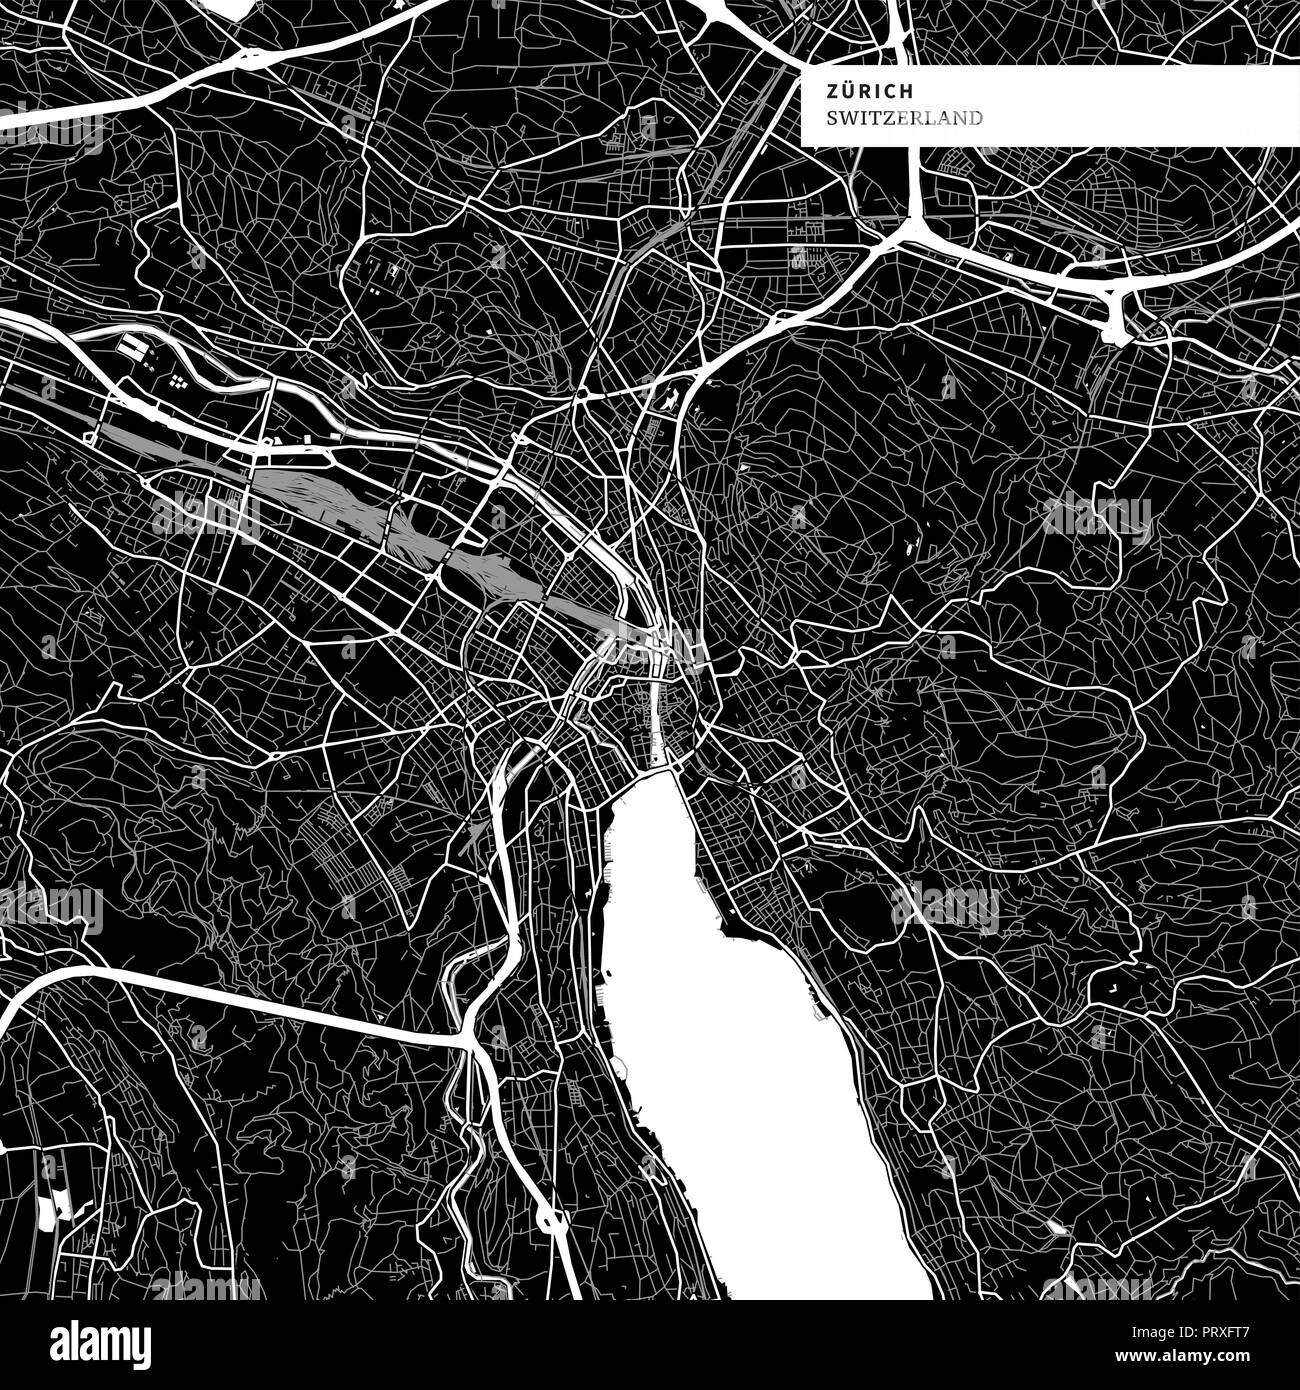 Stadtplan von Zürich, Schweiz mit typischen städtischen Wahrzeichen wie Gebäude, Straßen, Wasserwege und Eisenbahnen sowie kleinere Straßen und Parks Trails. Stock Vektor